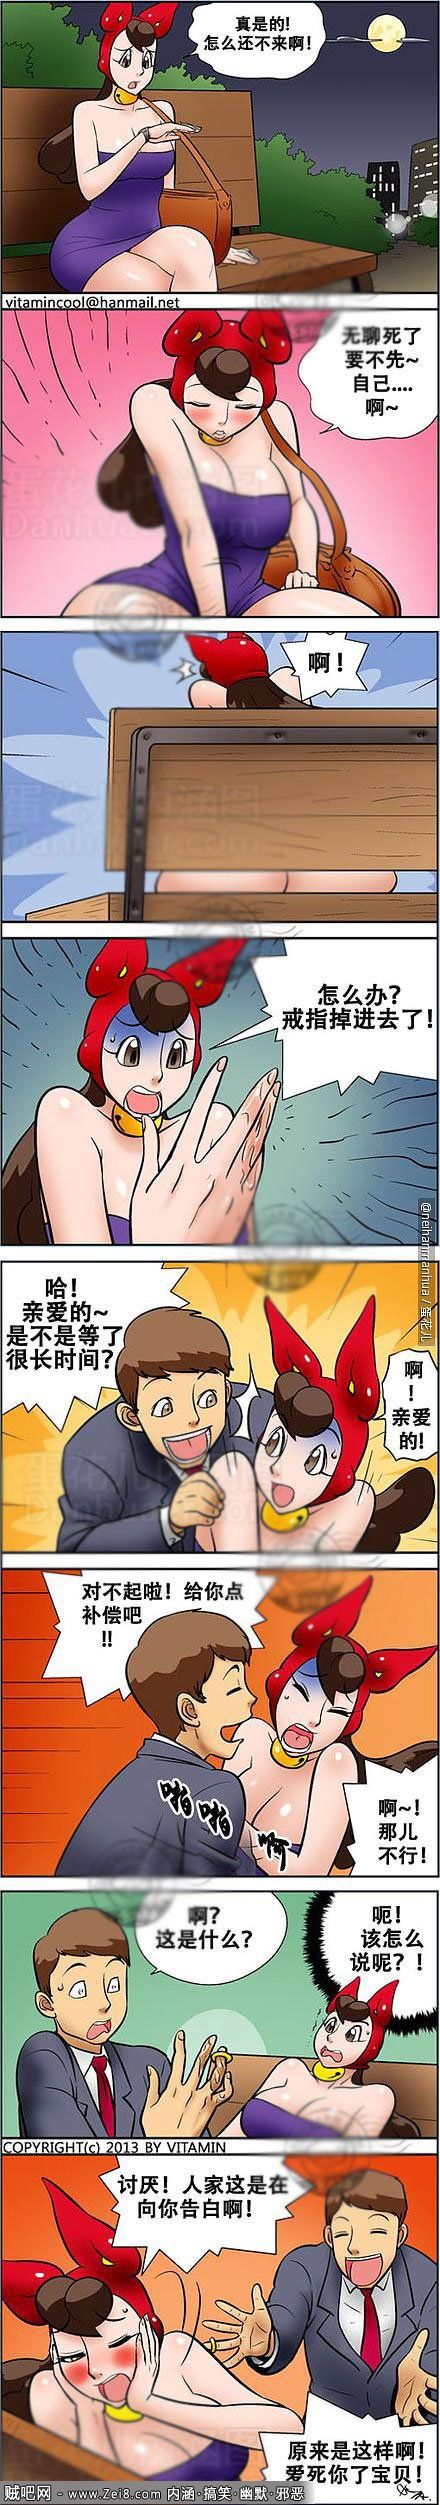 [最新韩国漫画]：情人节的表白